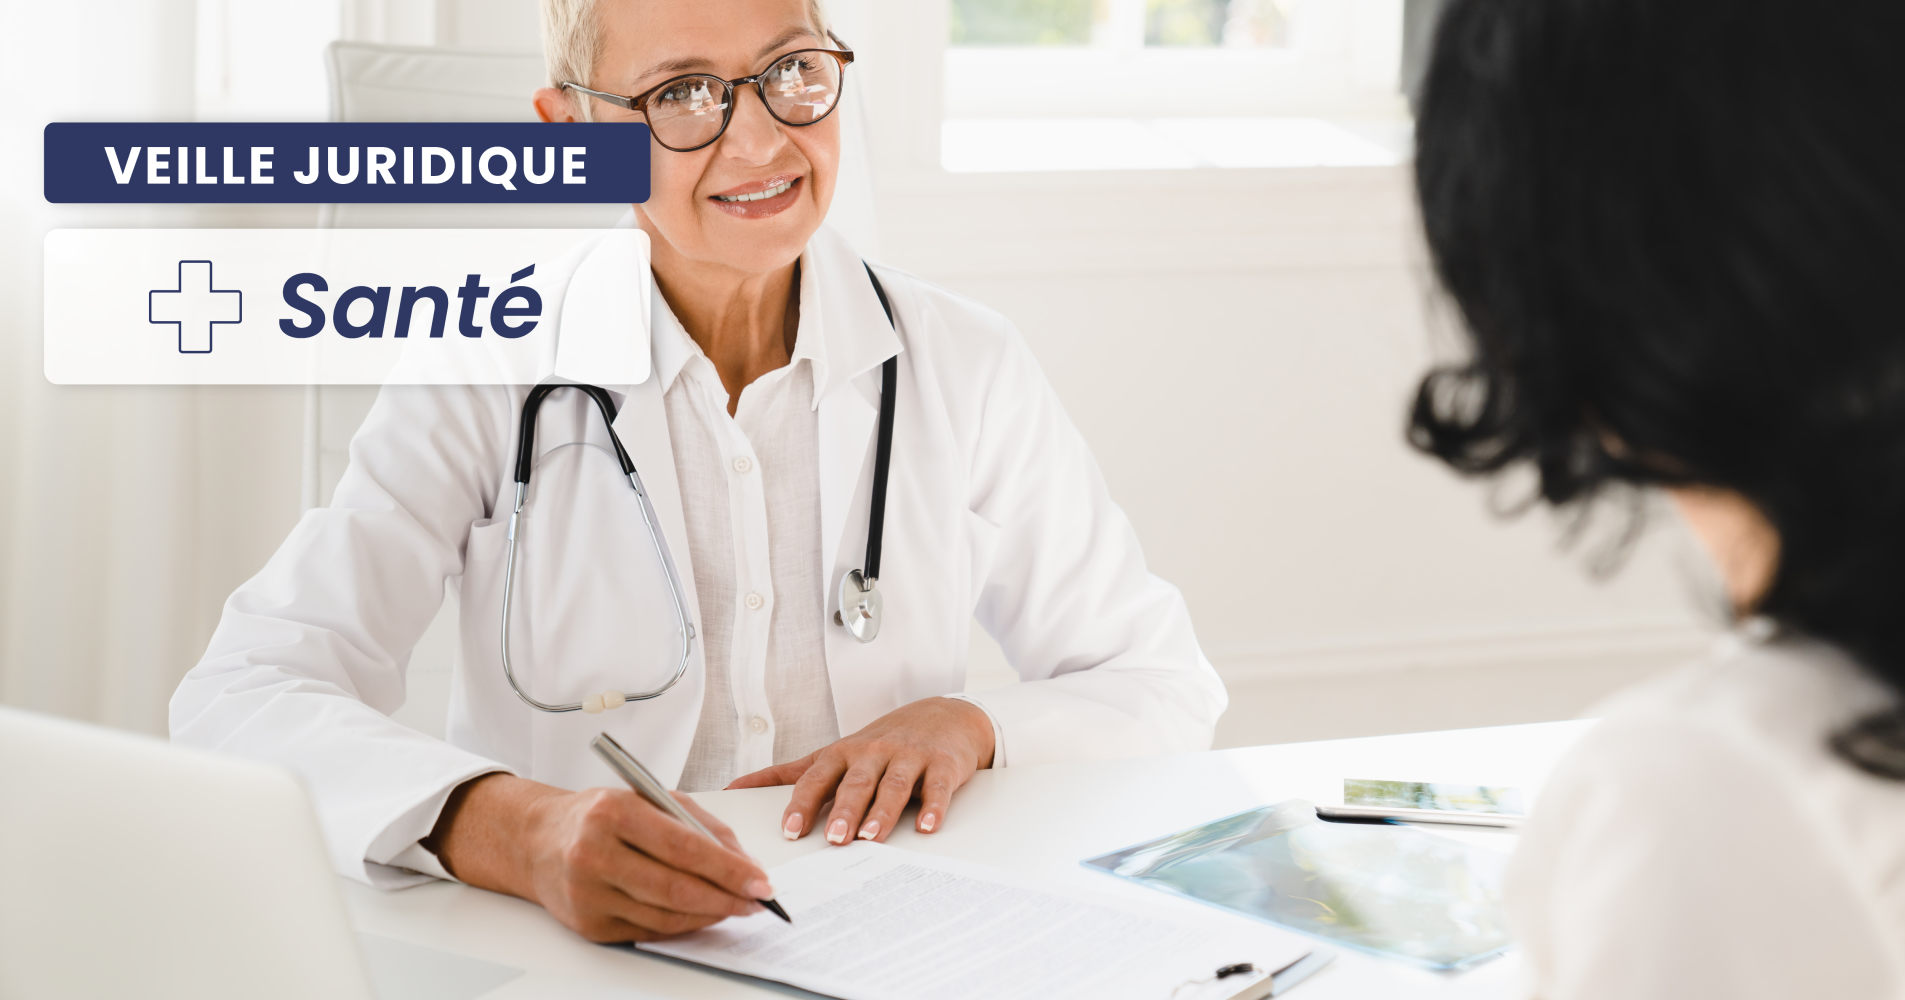 SANTÉ - Rappel des règles de remboursement des dispositifs médicaux à usage individuel par l’assurance maladie